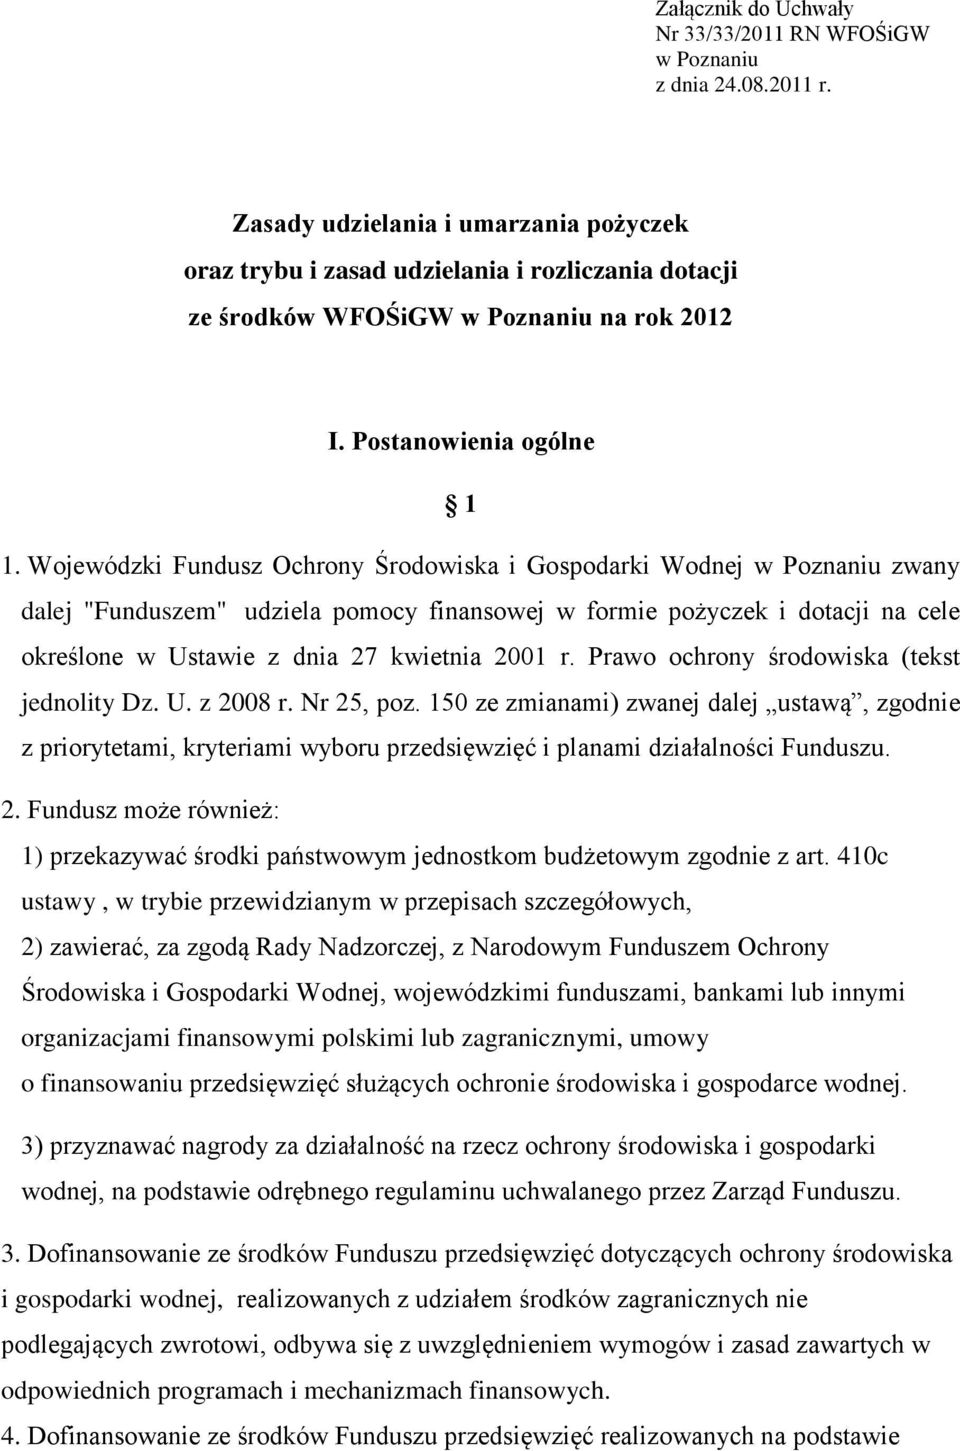 Wojewódzki Fundusz Ochrony Środowiska i Gospodarki Wodnej w Poznaniu zwany dalej "Funduszem" udziela pomocy finansowej w formie pożyczek i dotacji na cele określone w Ustawie z dnia 27 kwietnia 2001